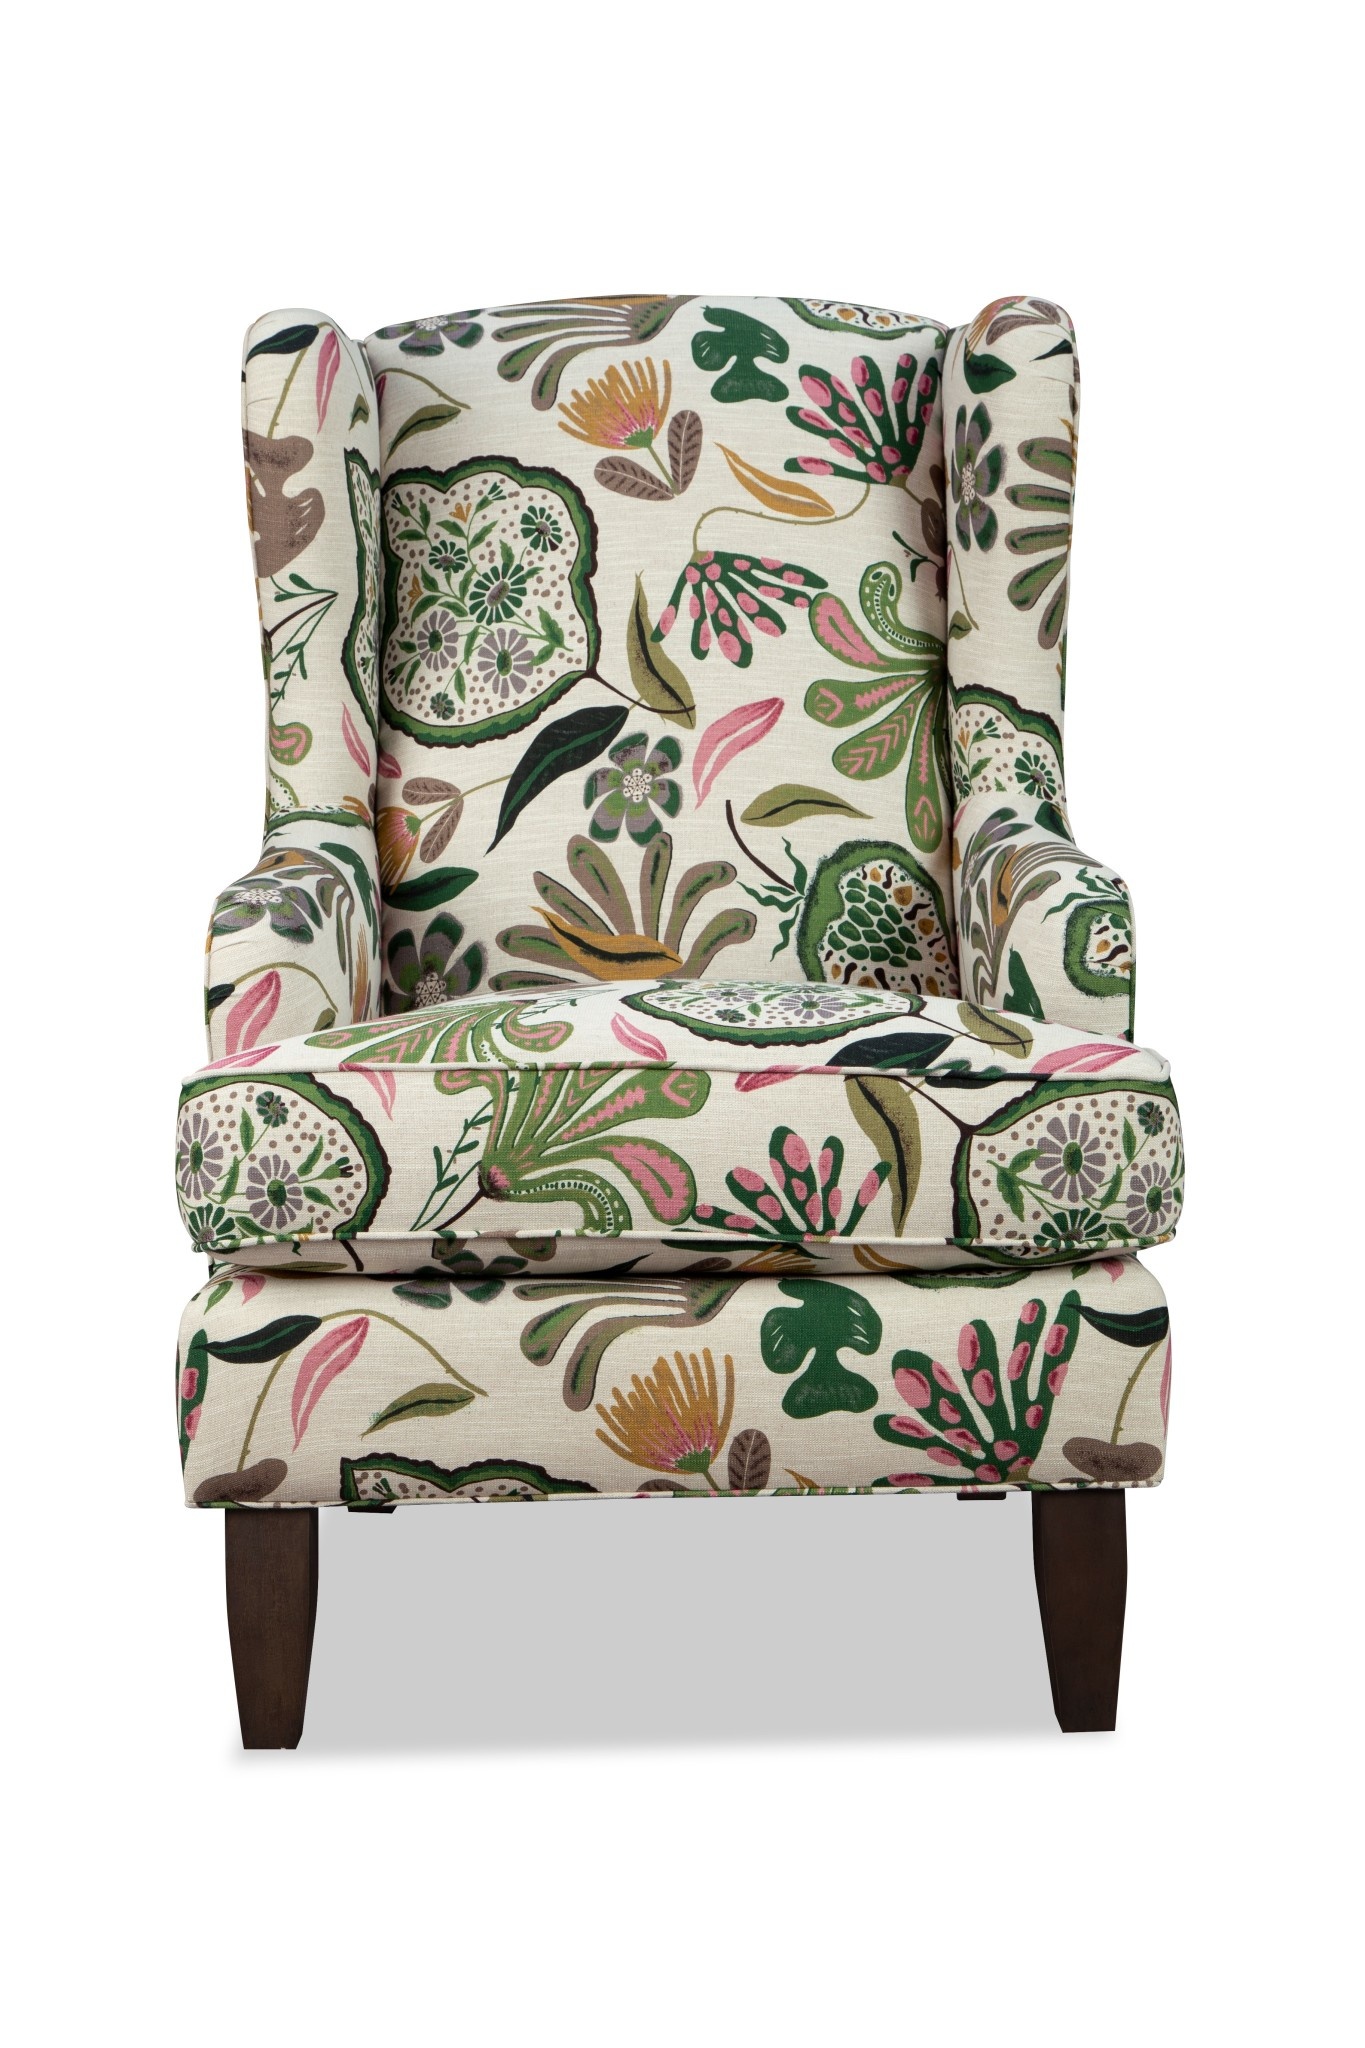 Craftmaster Furniture P037510BD Paula Deen Chair